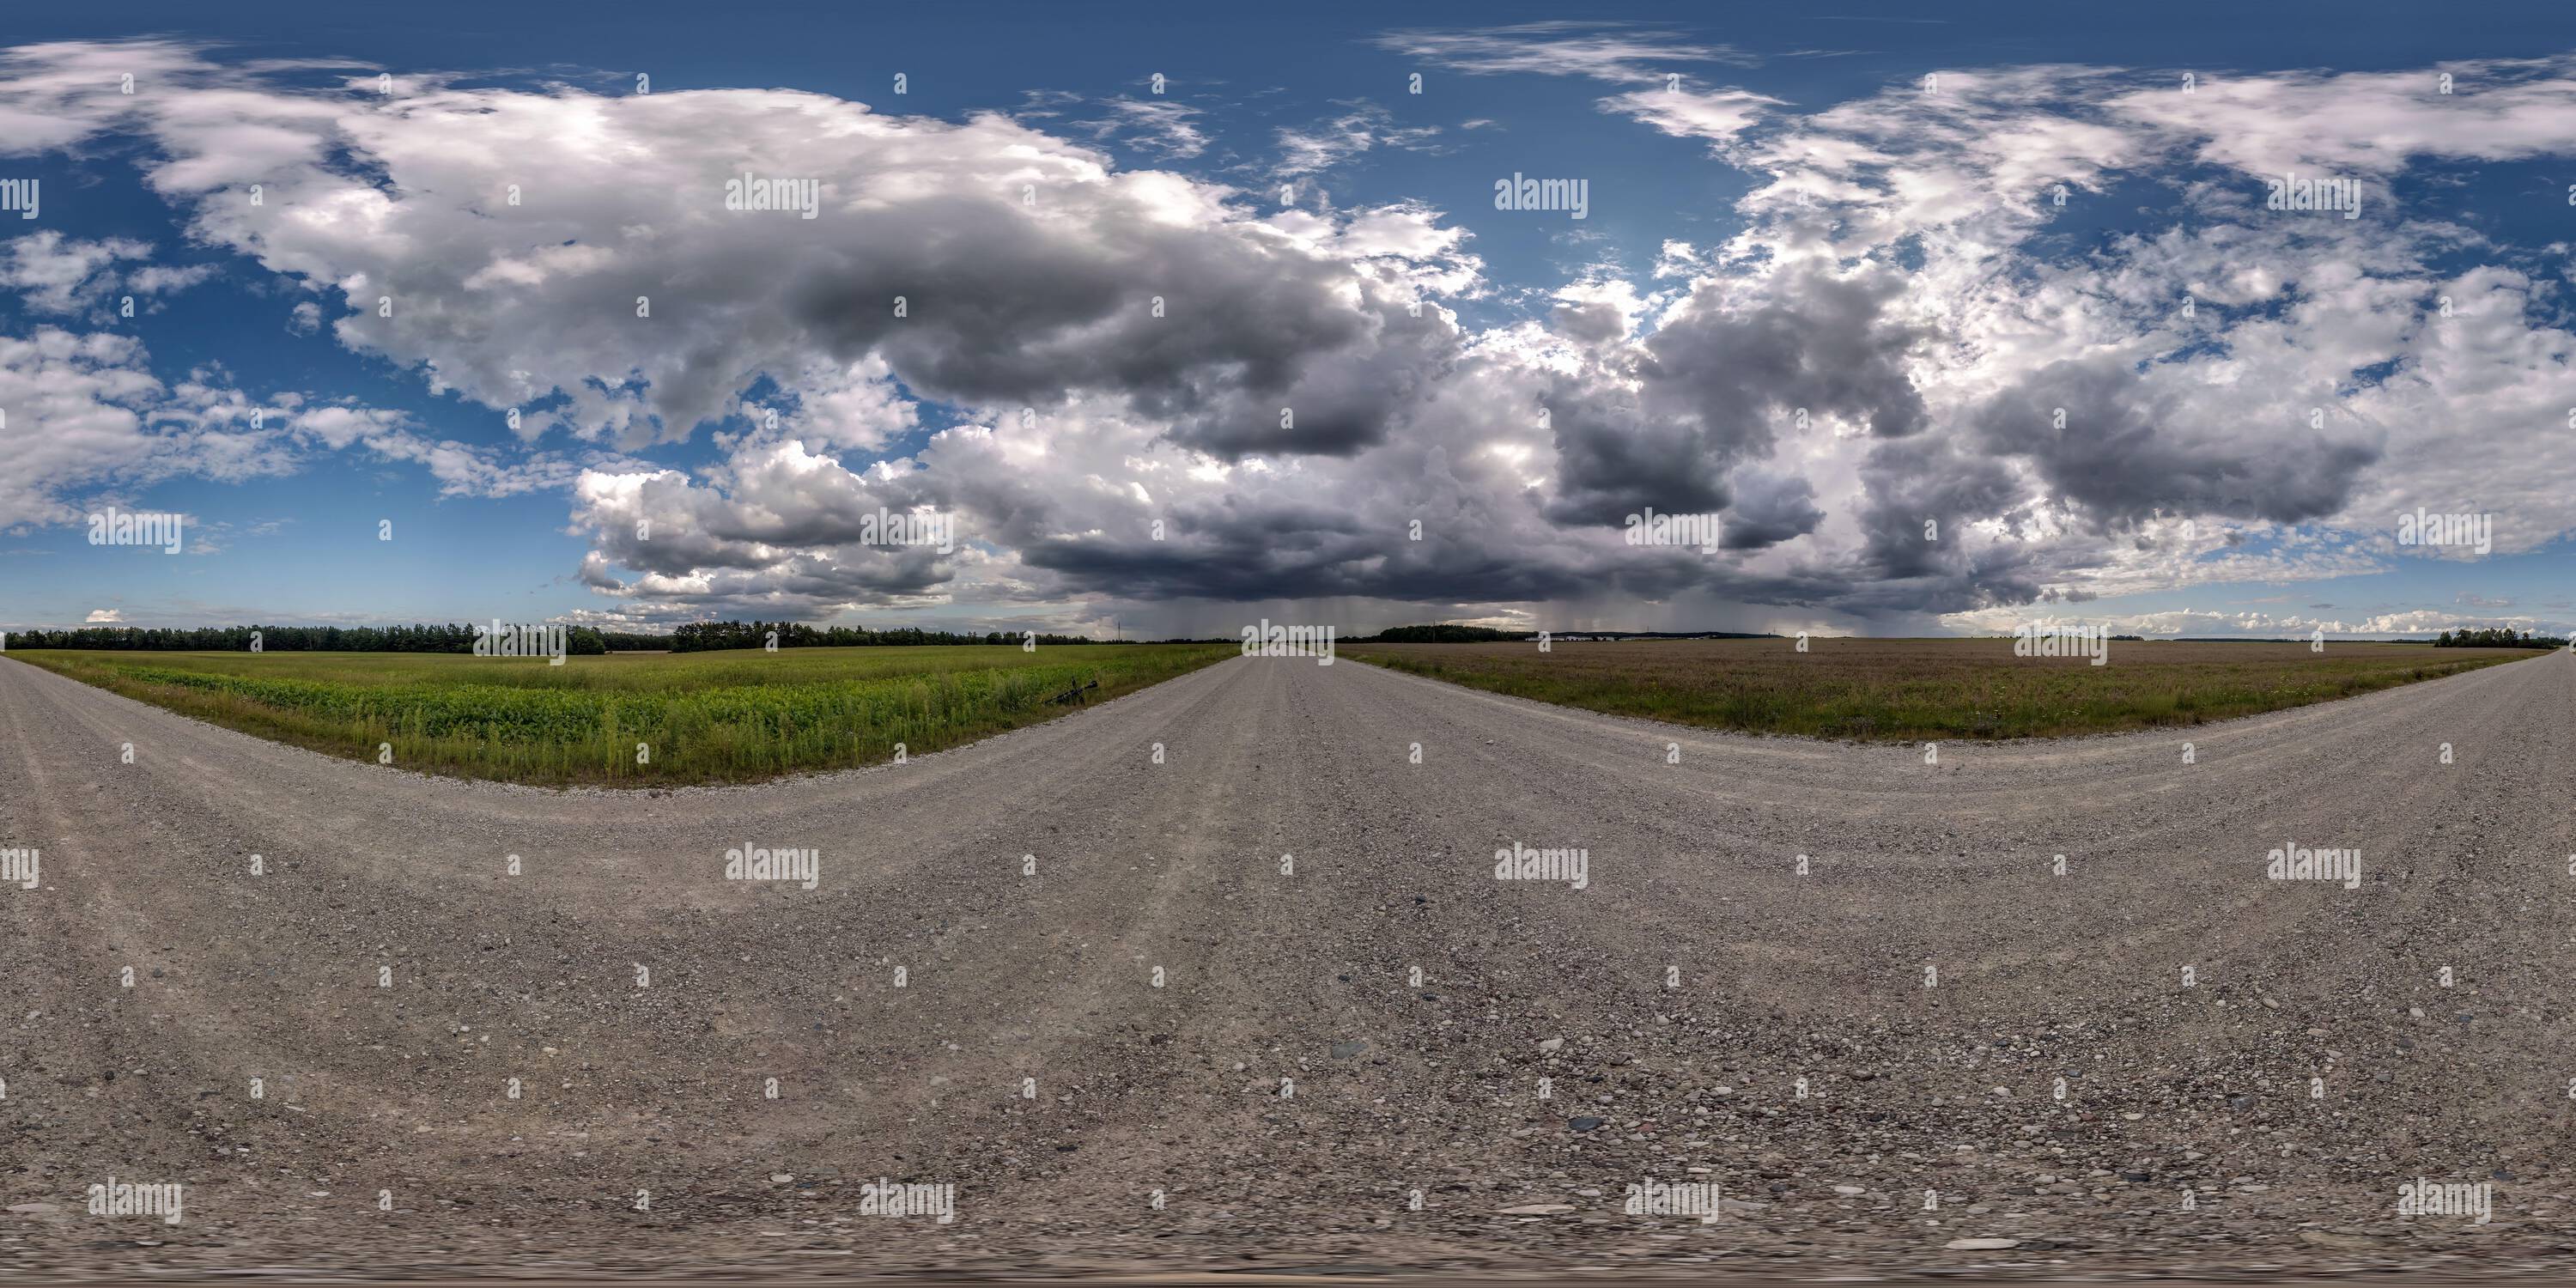 Full 360 degree equirectangular panorama hdri of dark modern